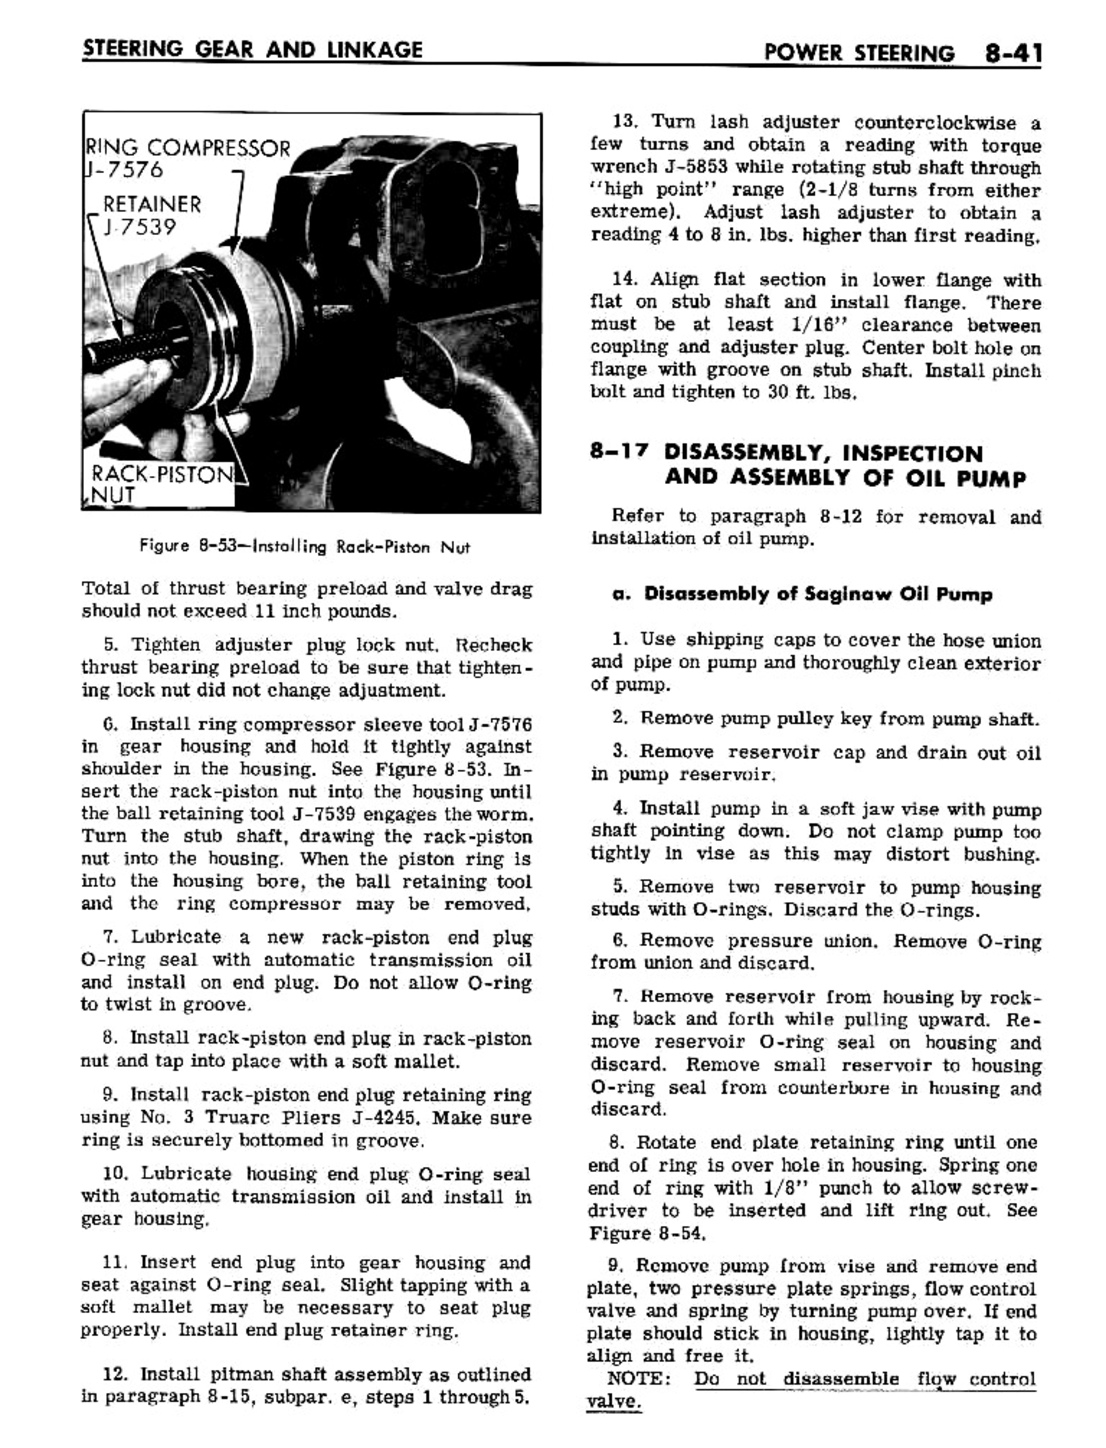 n_08 1961 Buick Shop Manual - Steering-041-041.jpg